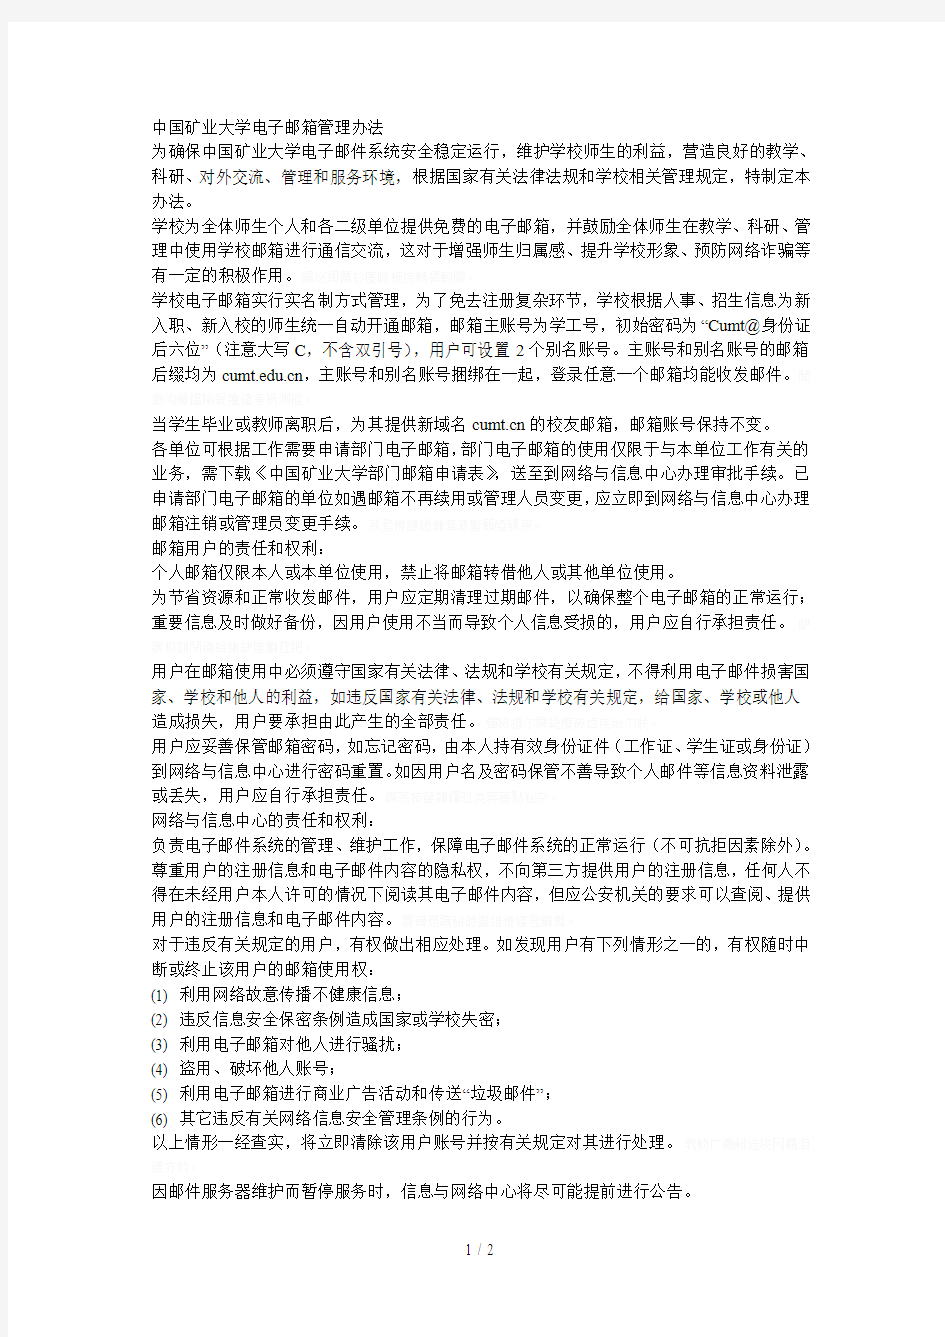 中国矿业大学电子邮箱管理办法